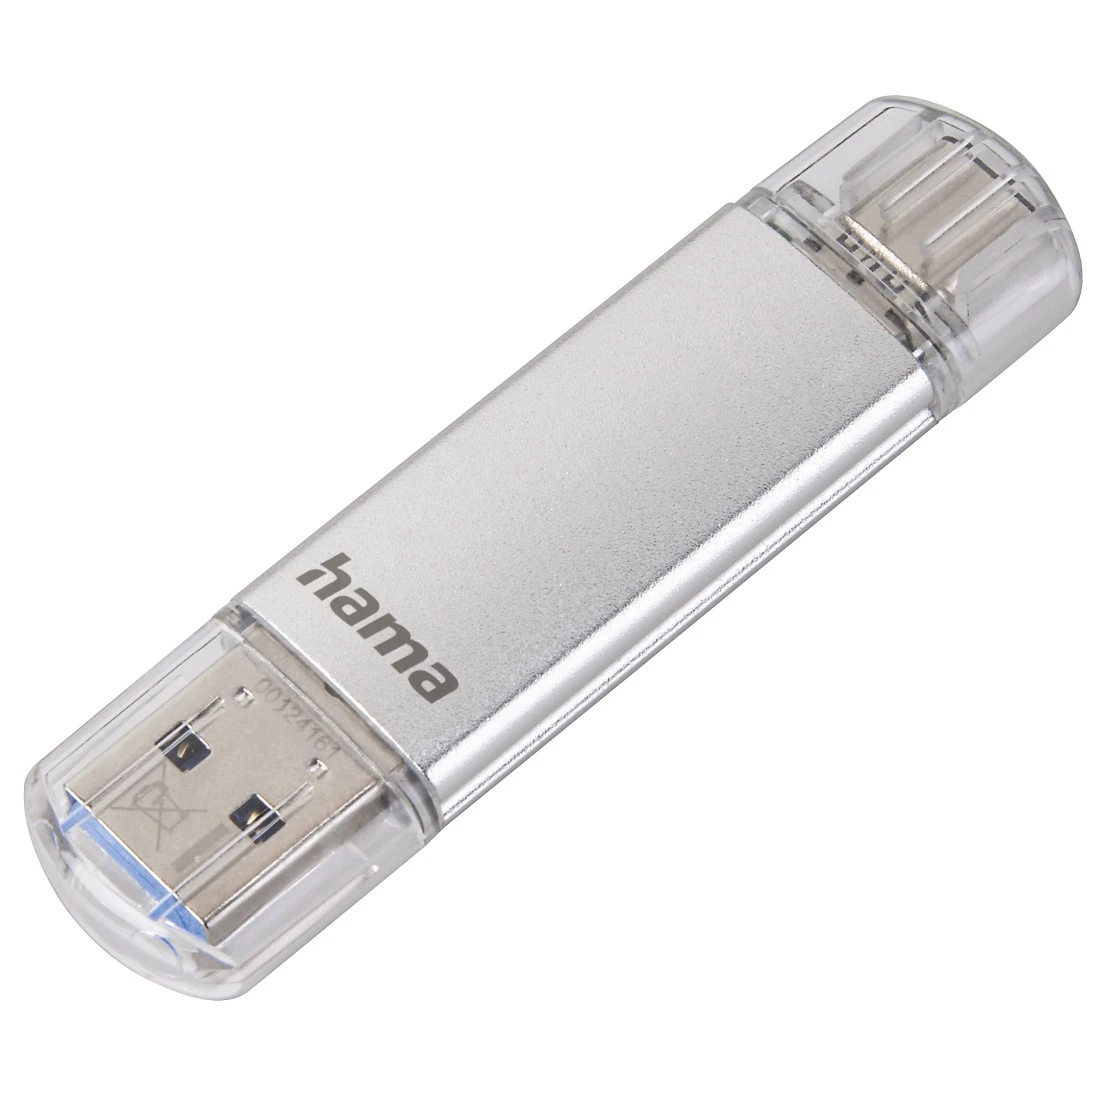 Clé USB 3.0 / USB-C pour téléphone portable / tablette vers pc - 64 Go